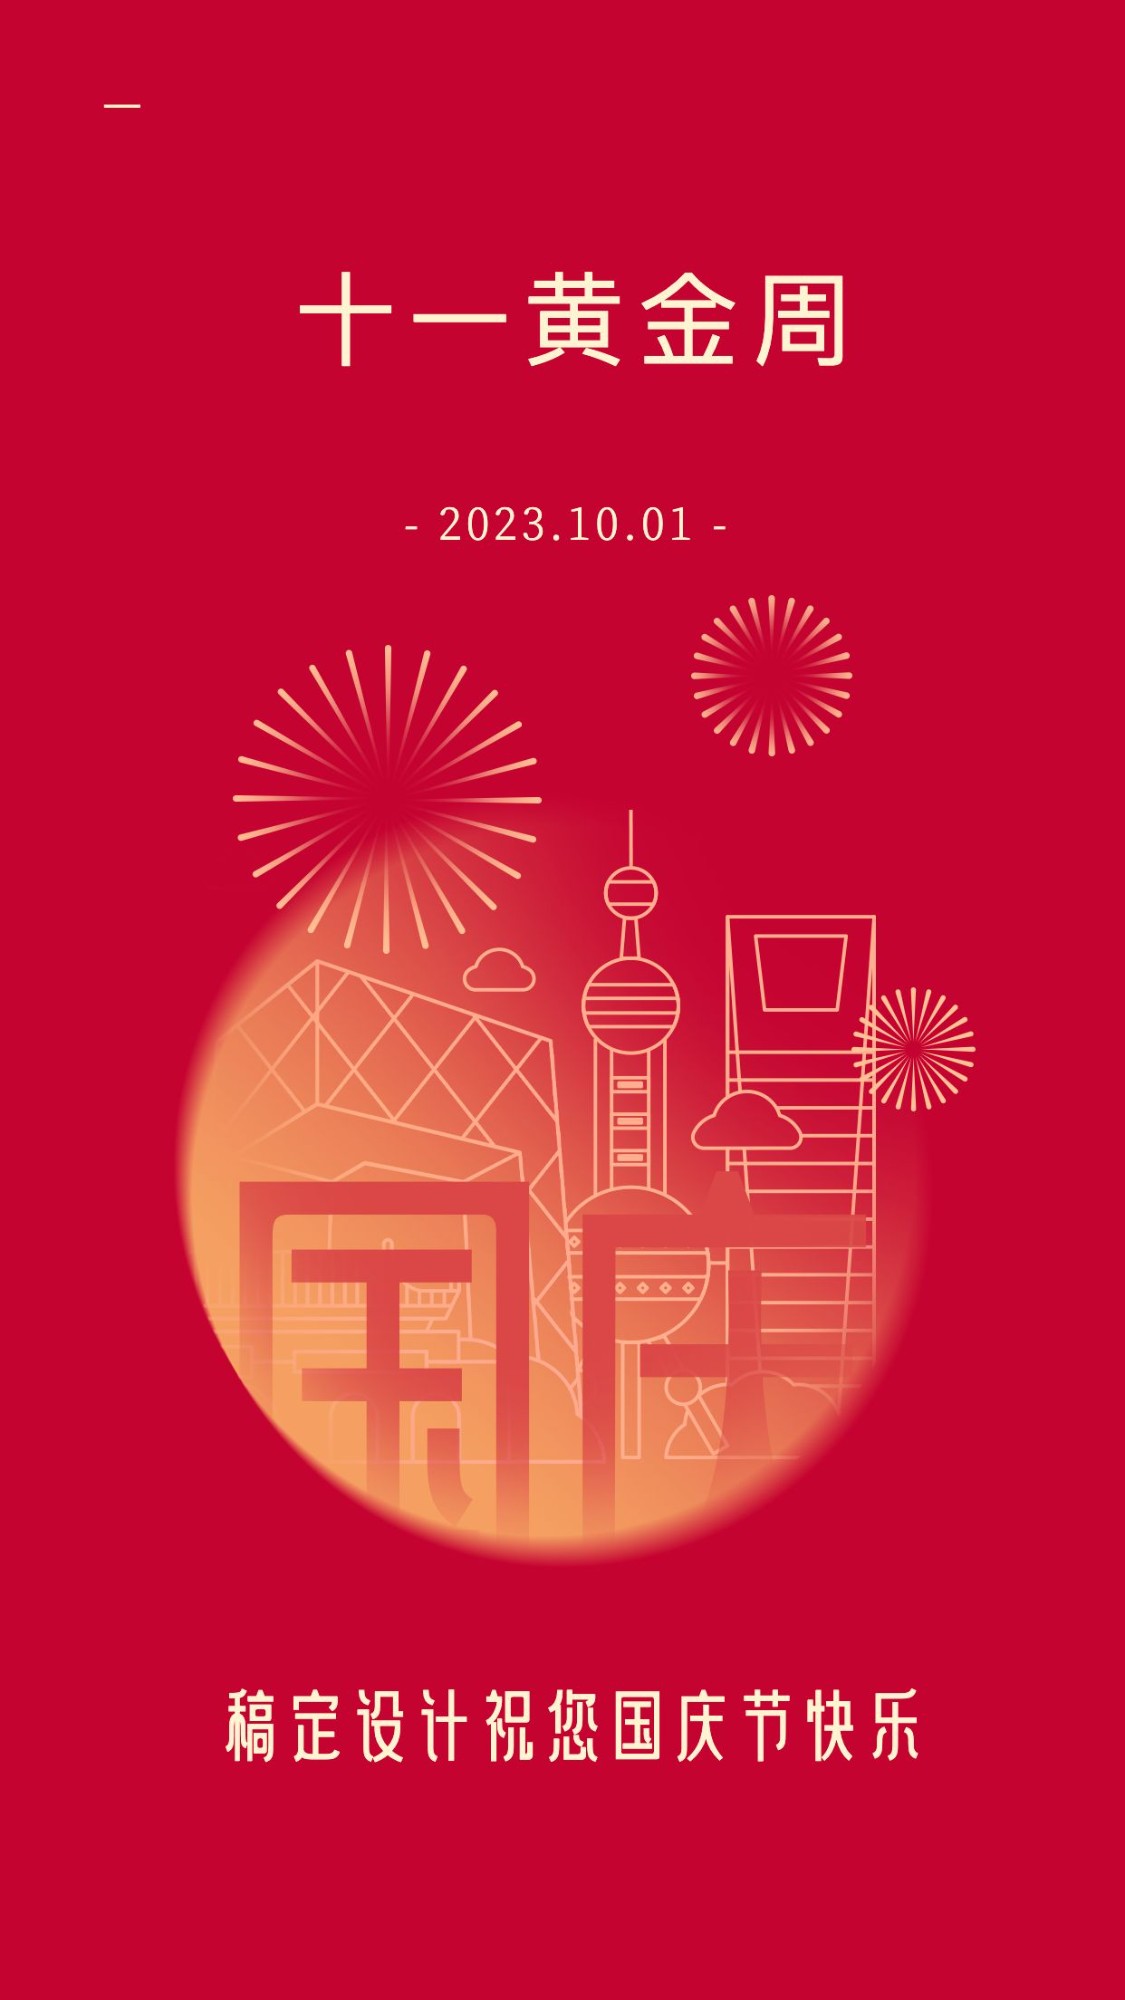 国庆节祝福手绘线描中国红电子贺卡预览效果